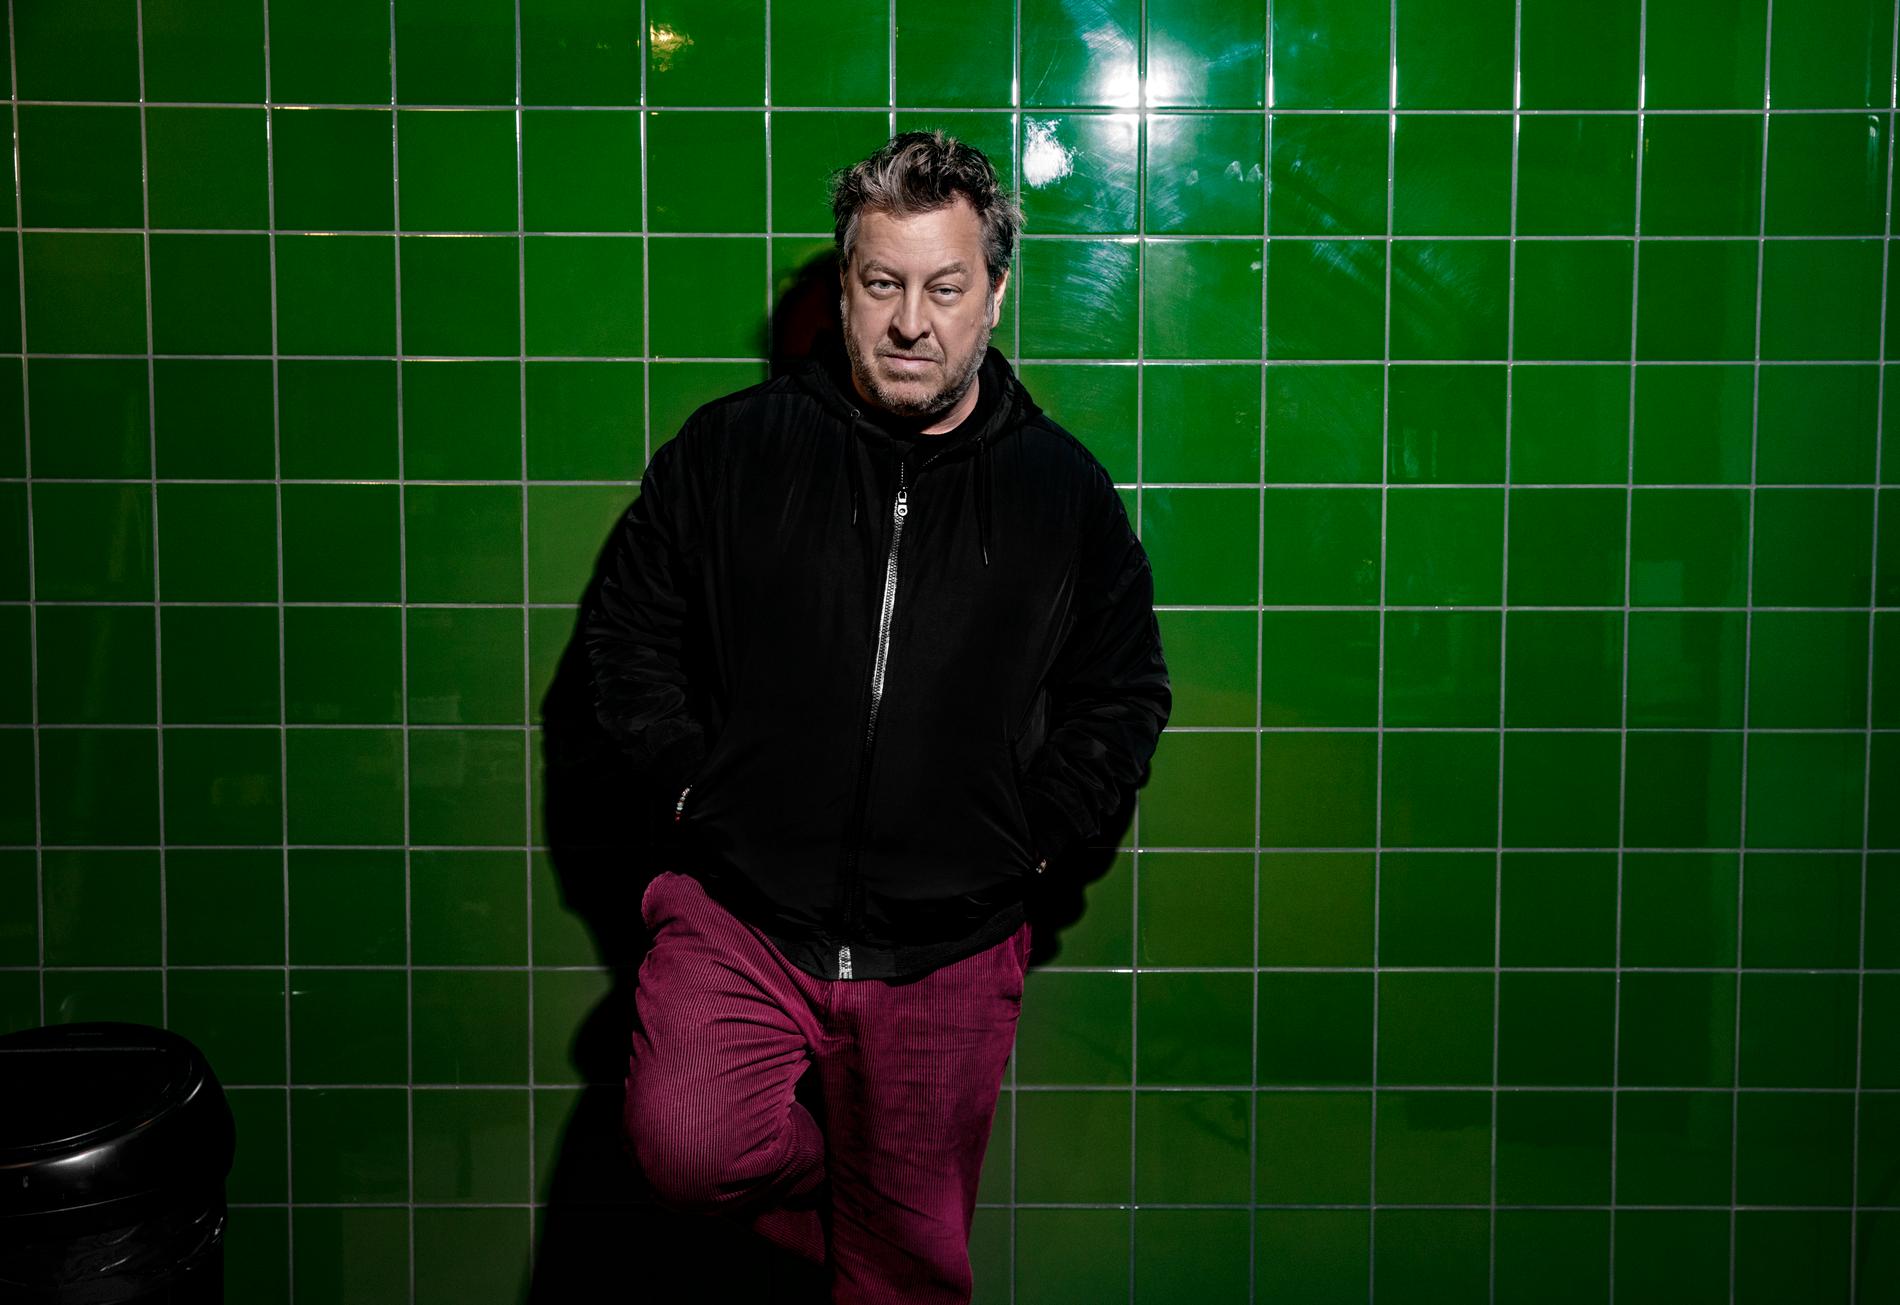 Mauro Scocco är tillbaka med nya albumet ”Den stora glömskan”, hans första soloalbum på sju år.